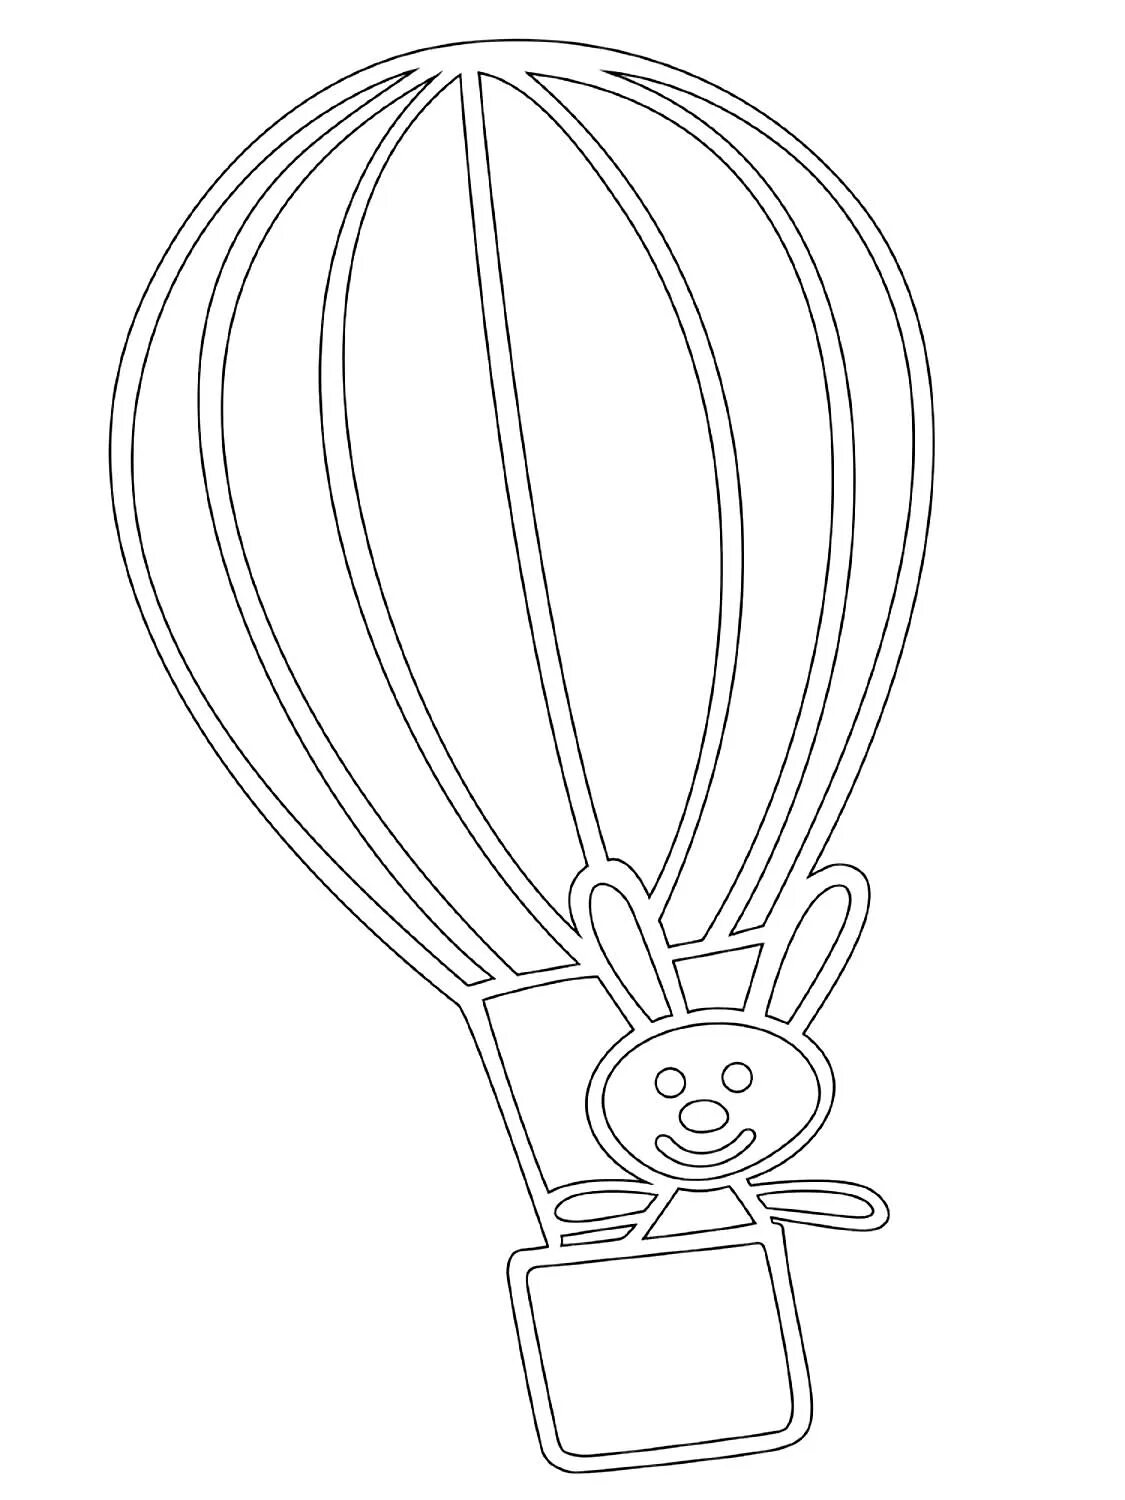 Воздушный шар раскраска. Воздушный шар с корзиной трафарет. Воздушный шар раскраска для детей. Воздушные шары для раскрашивания детям.